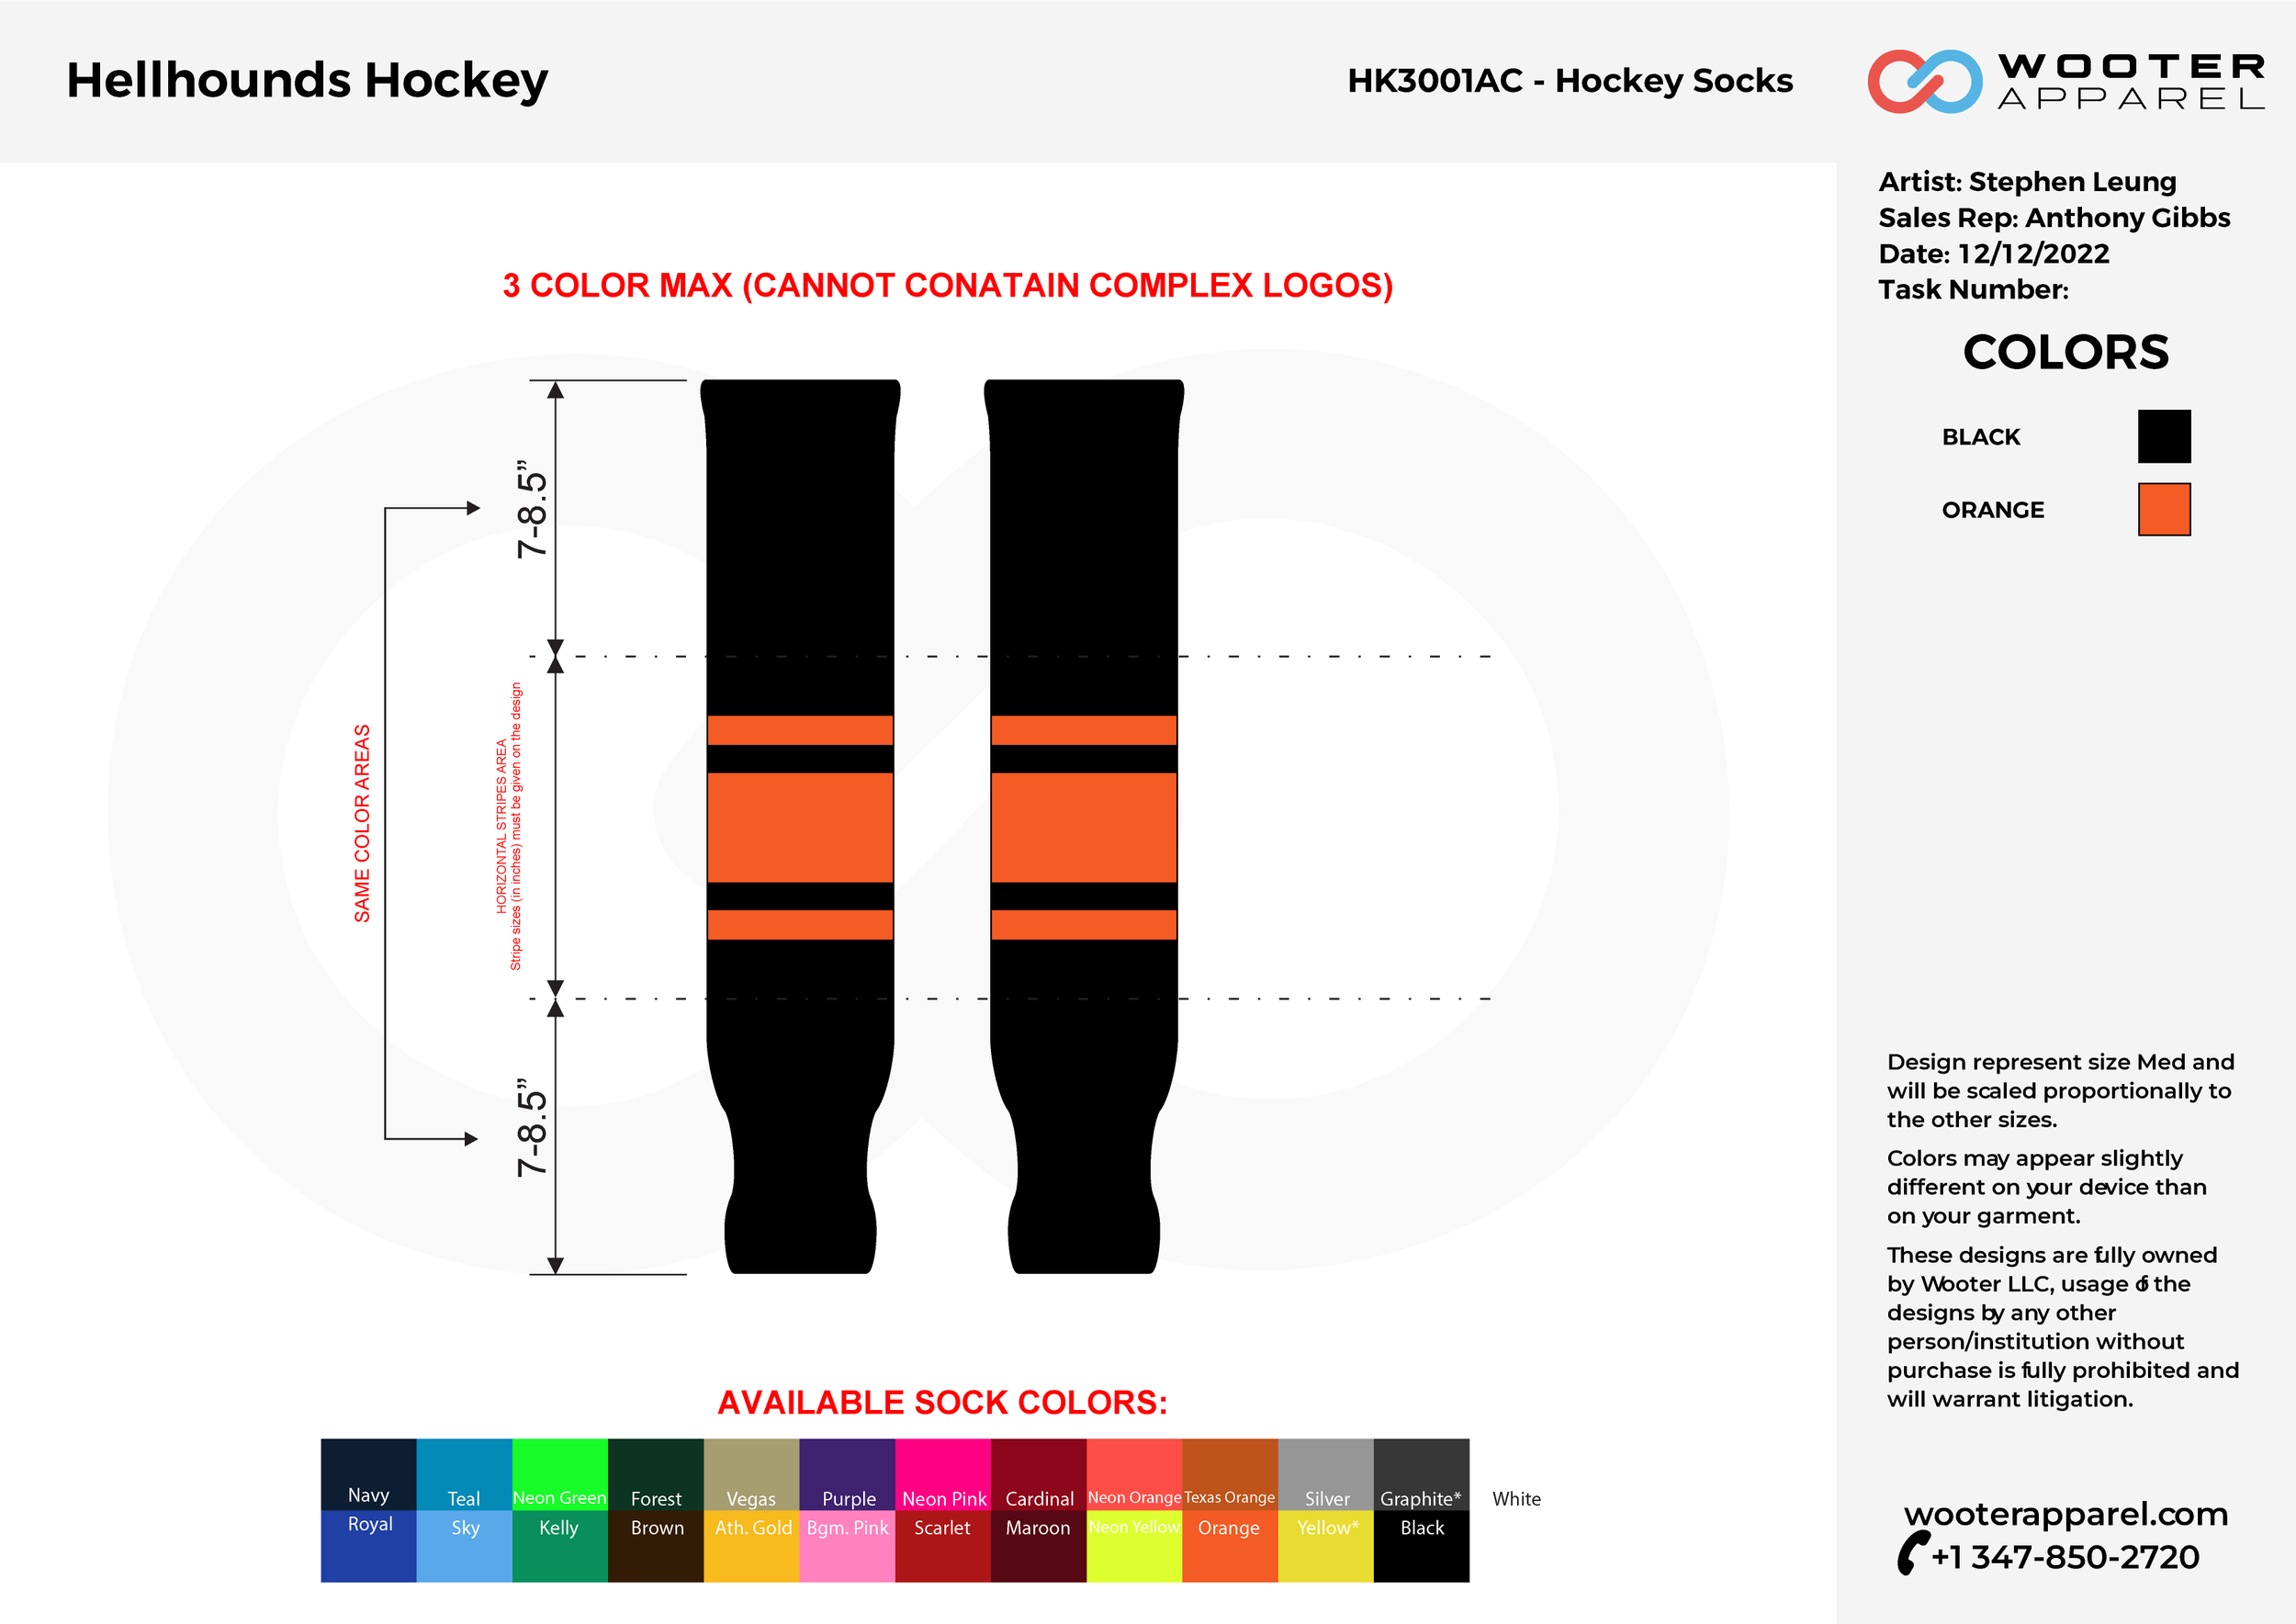 HaganHockey.com - Now available! Custom Hockey socks.